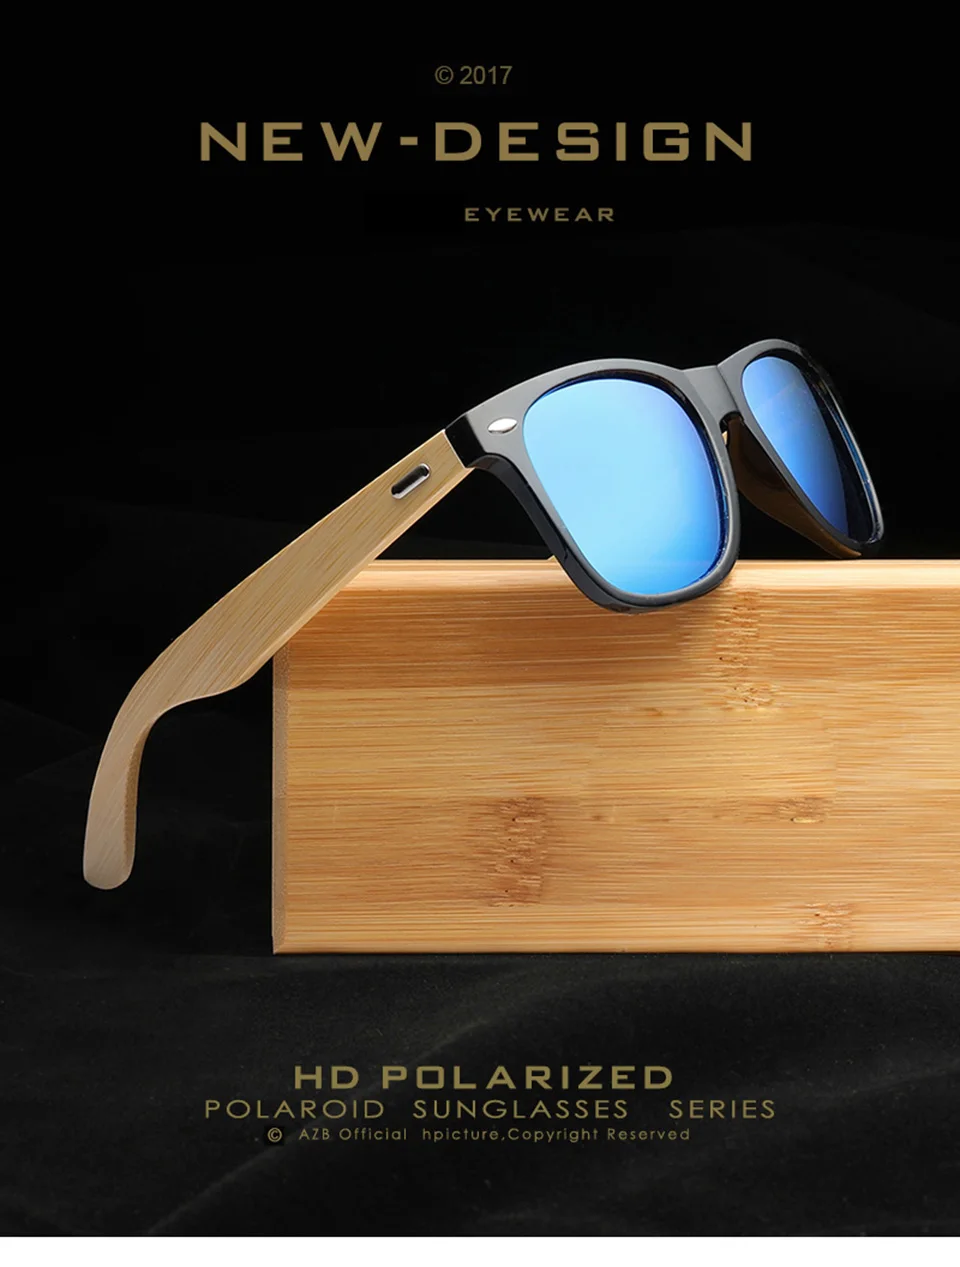 GY винтажные классические модные деревянные солнцезащитные очки Для мужчин Для женщин квадратном деревянном солнцезащитные очки для мужчин UV400 очки с зеркальными линзами для вождения UV400